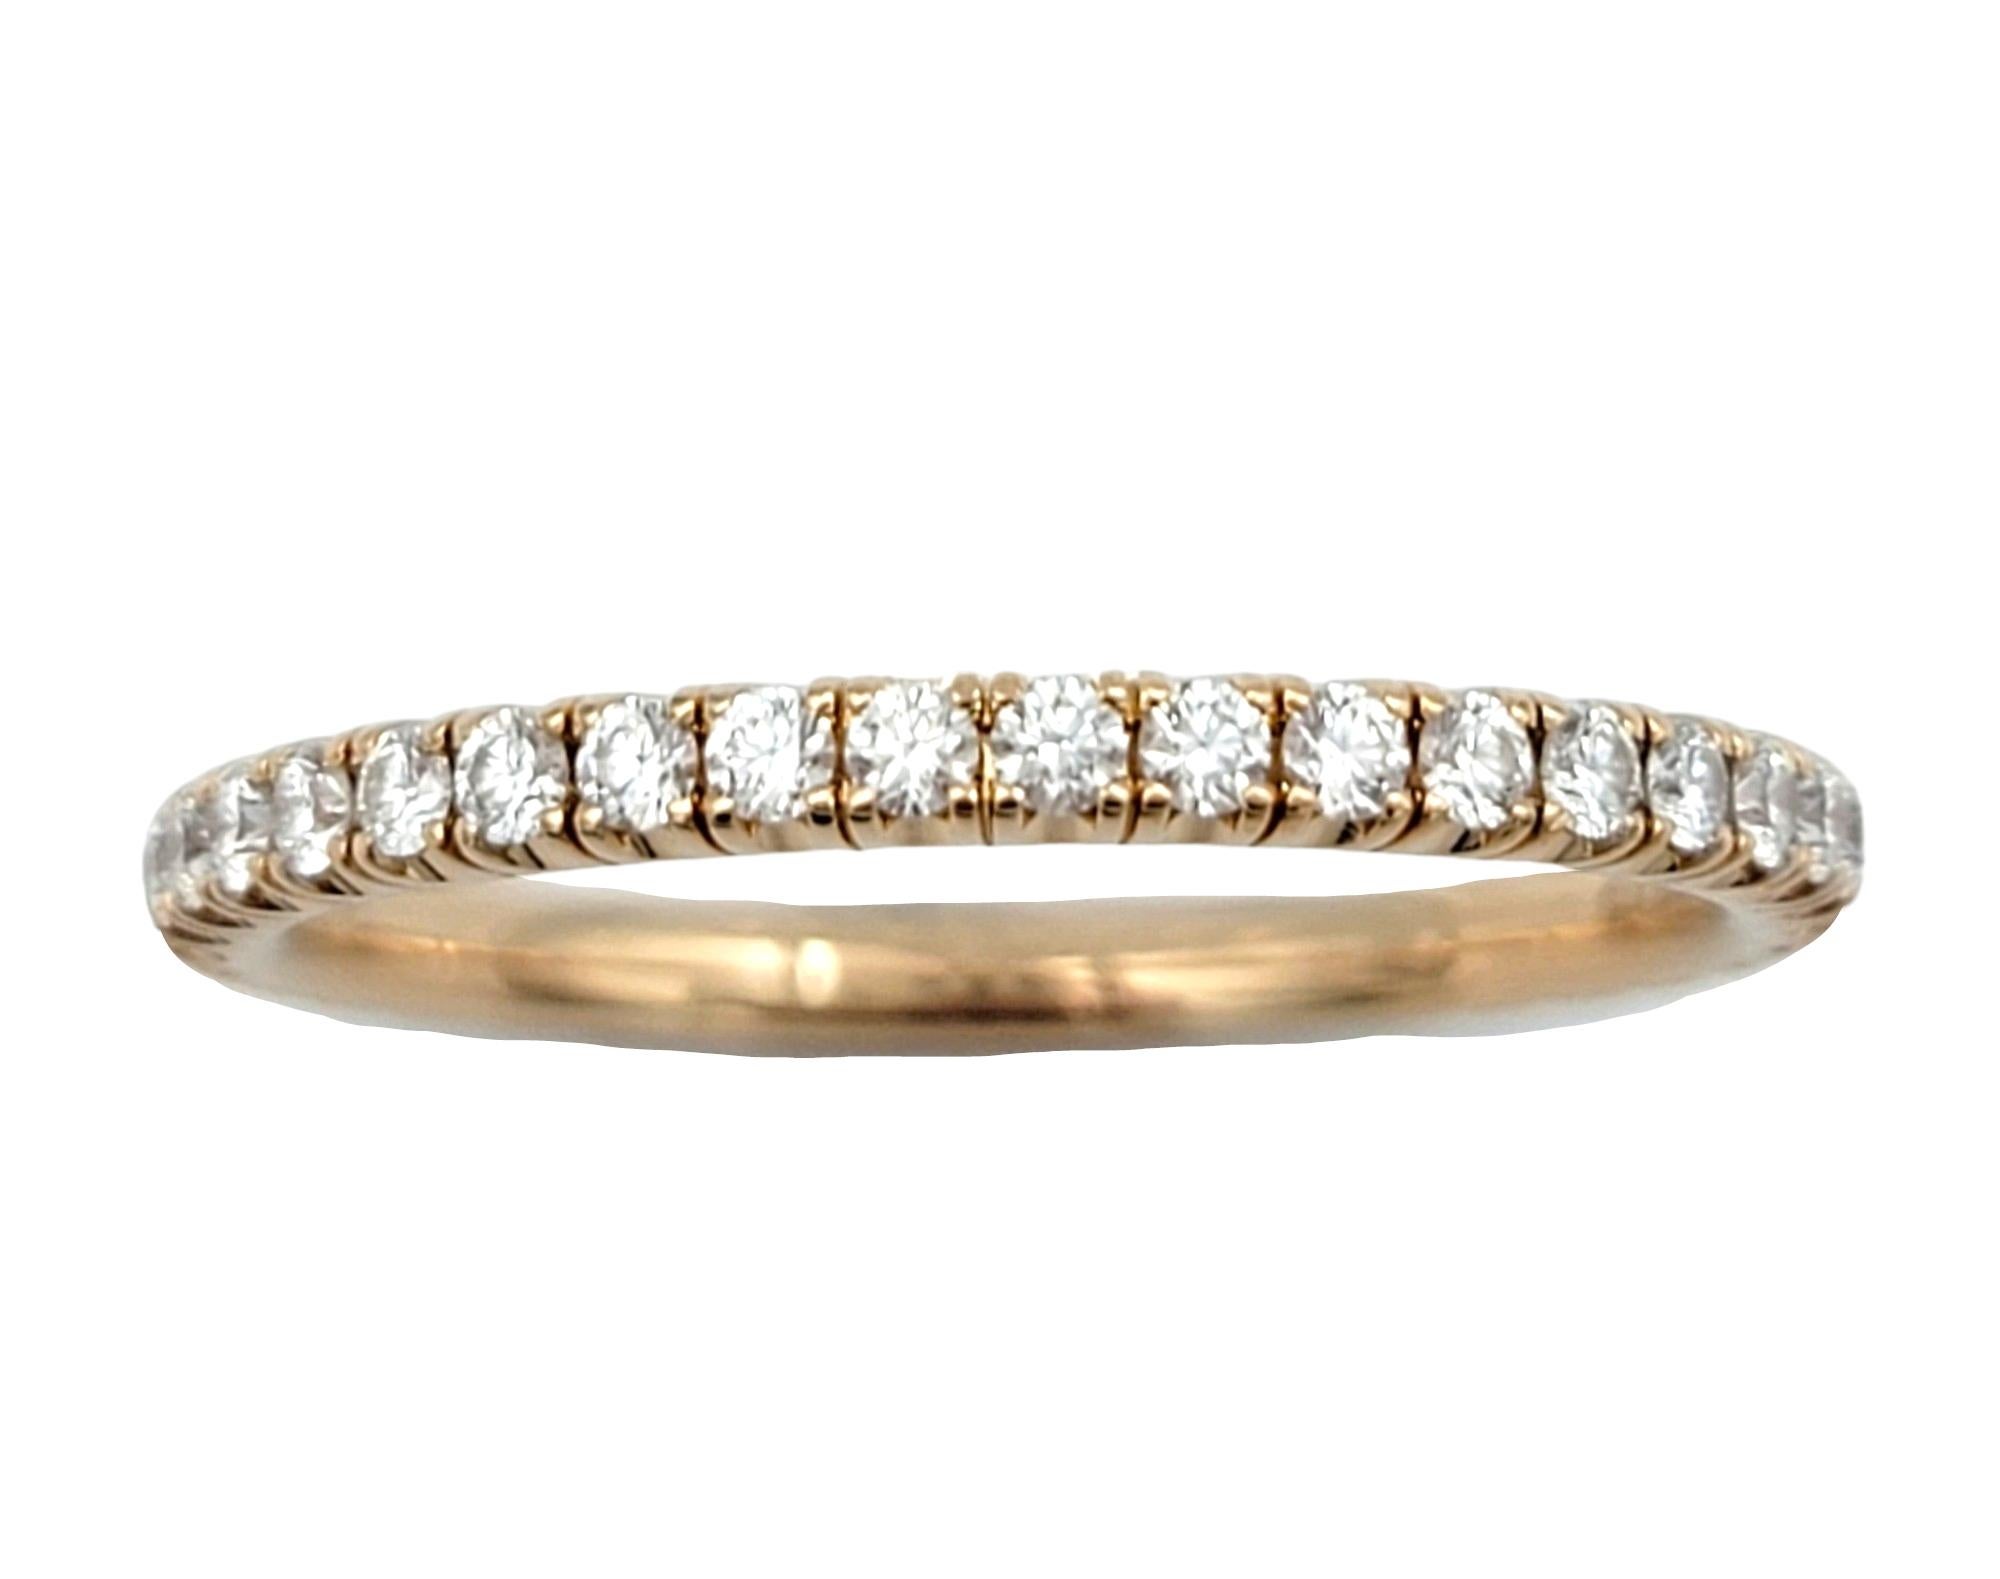 Taille de l'anneau : 6.75

Cette bague d'éternité en diamant de Cartier est une véritable œuvre d'art. Réalisée en luxueux or rose 18 carats, la bague est ornée d'une rangée continue de diamants exquis qui encerclent le bracelet, créant un spectacle